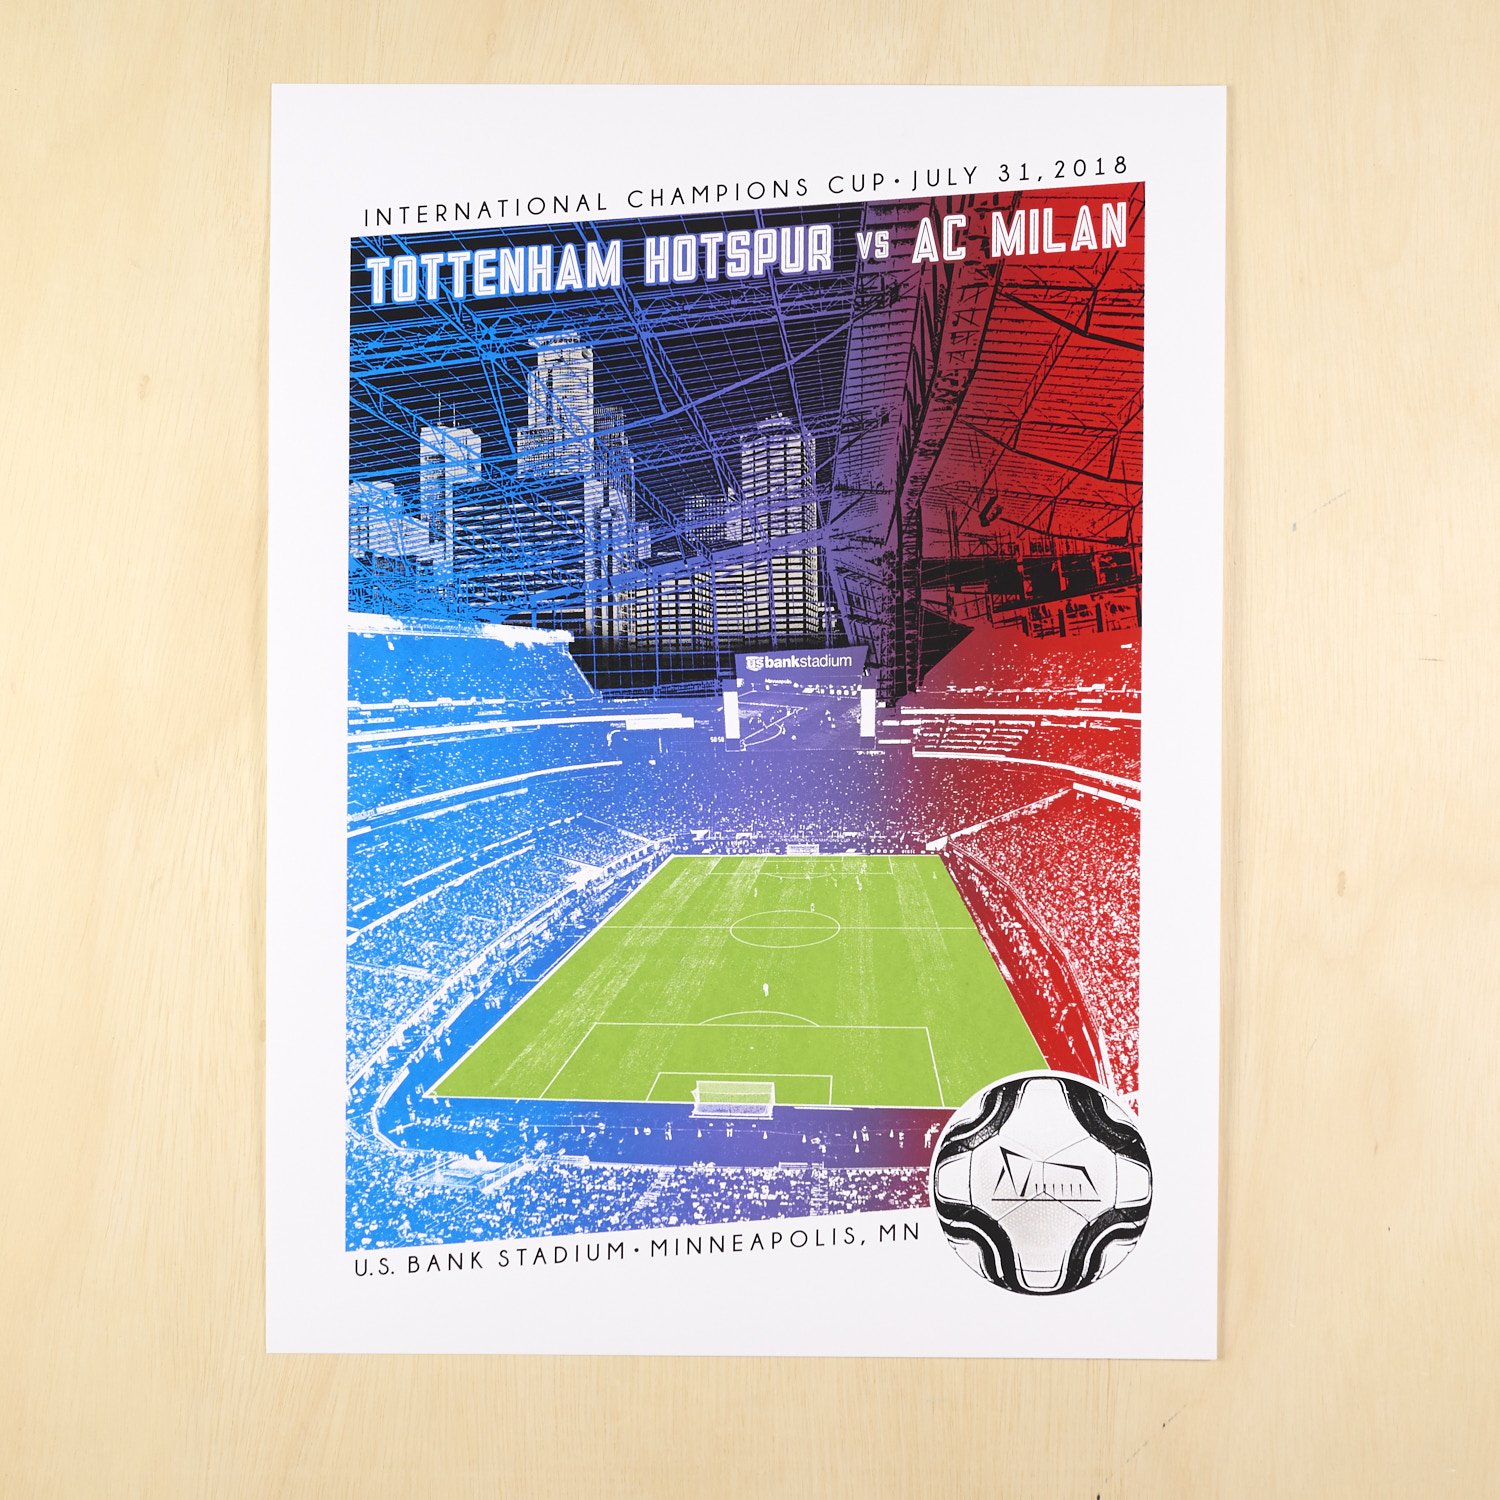 ICC Tottenham Hotspur vs AC Milan (Copy)